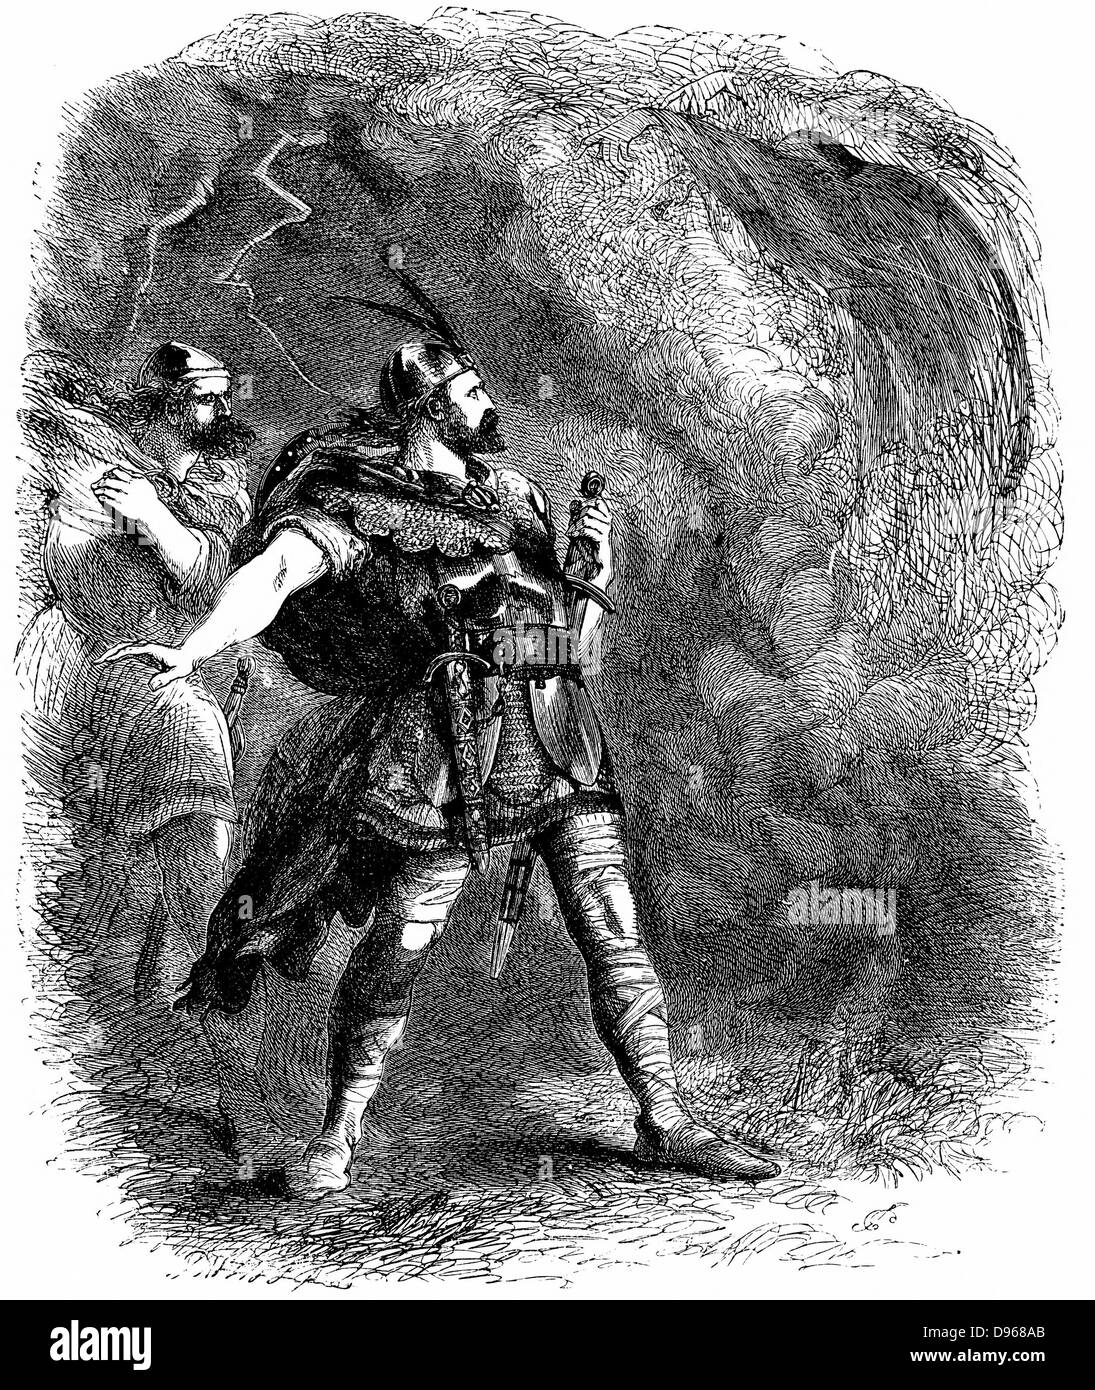 Macbeth et Banquo rencontre les trois sorcières et de recueillir leurs souhaits." prophétique " Illustration par Sir John Gilbert pour une édition de l'œuvre de Shakespeare, Londres 1858. La gravure sur bois Banque D'Images